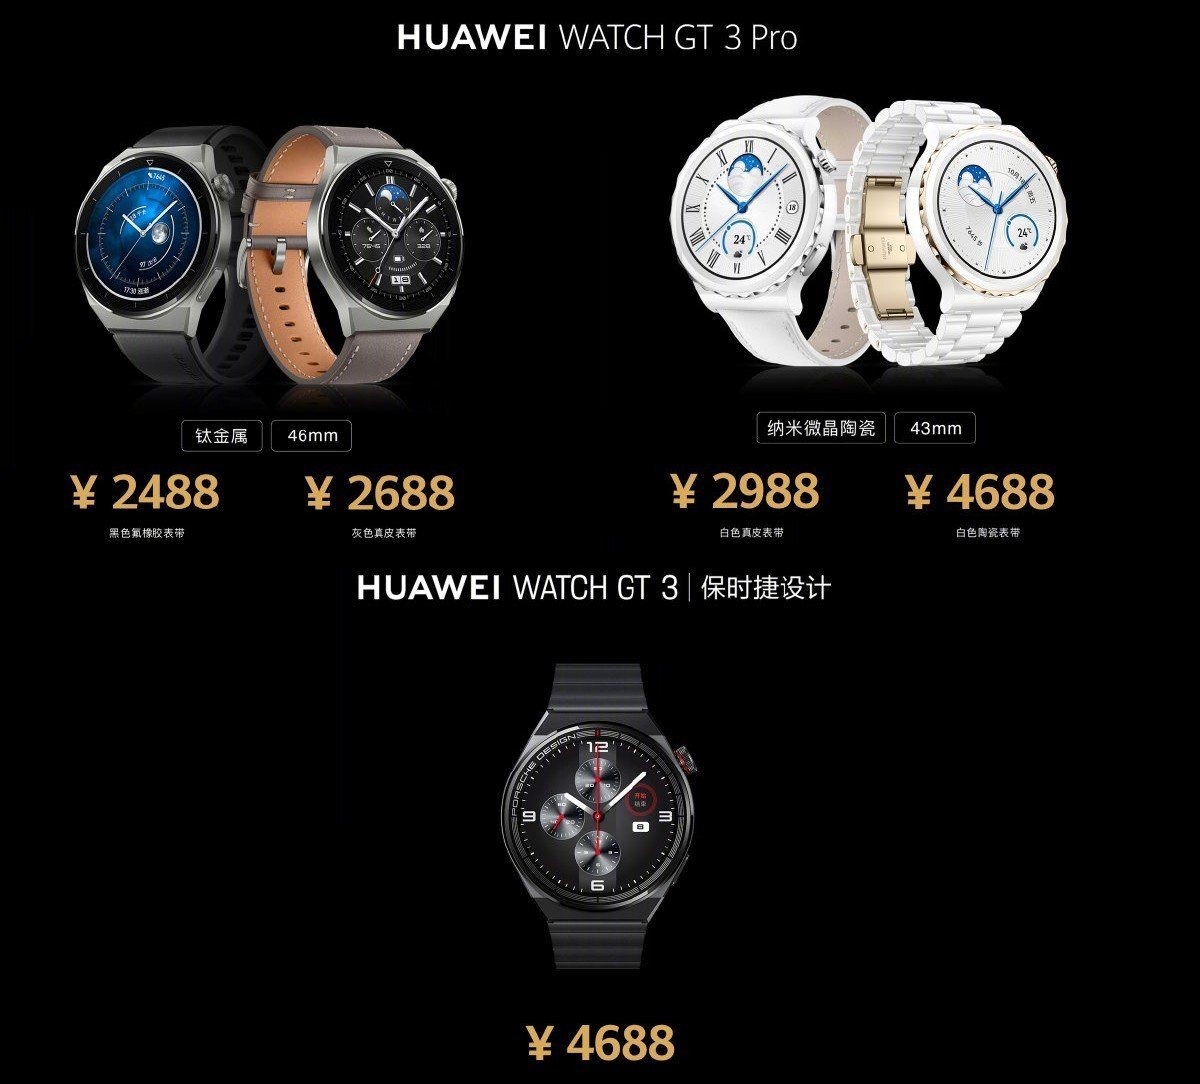 Huawei gt 3 nfc. Huawei watch gt 3 Pro Titanium 46mm. Huawei watch gt 3 Pro Ceramic. Huawei watch gt3 Pro 46mm. Huawei watch gt 3 Pro 43mm.